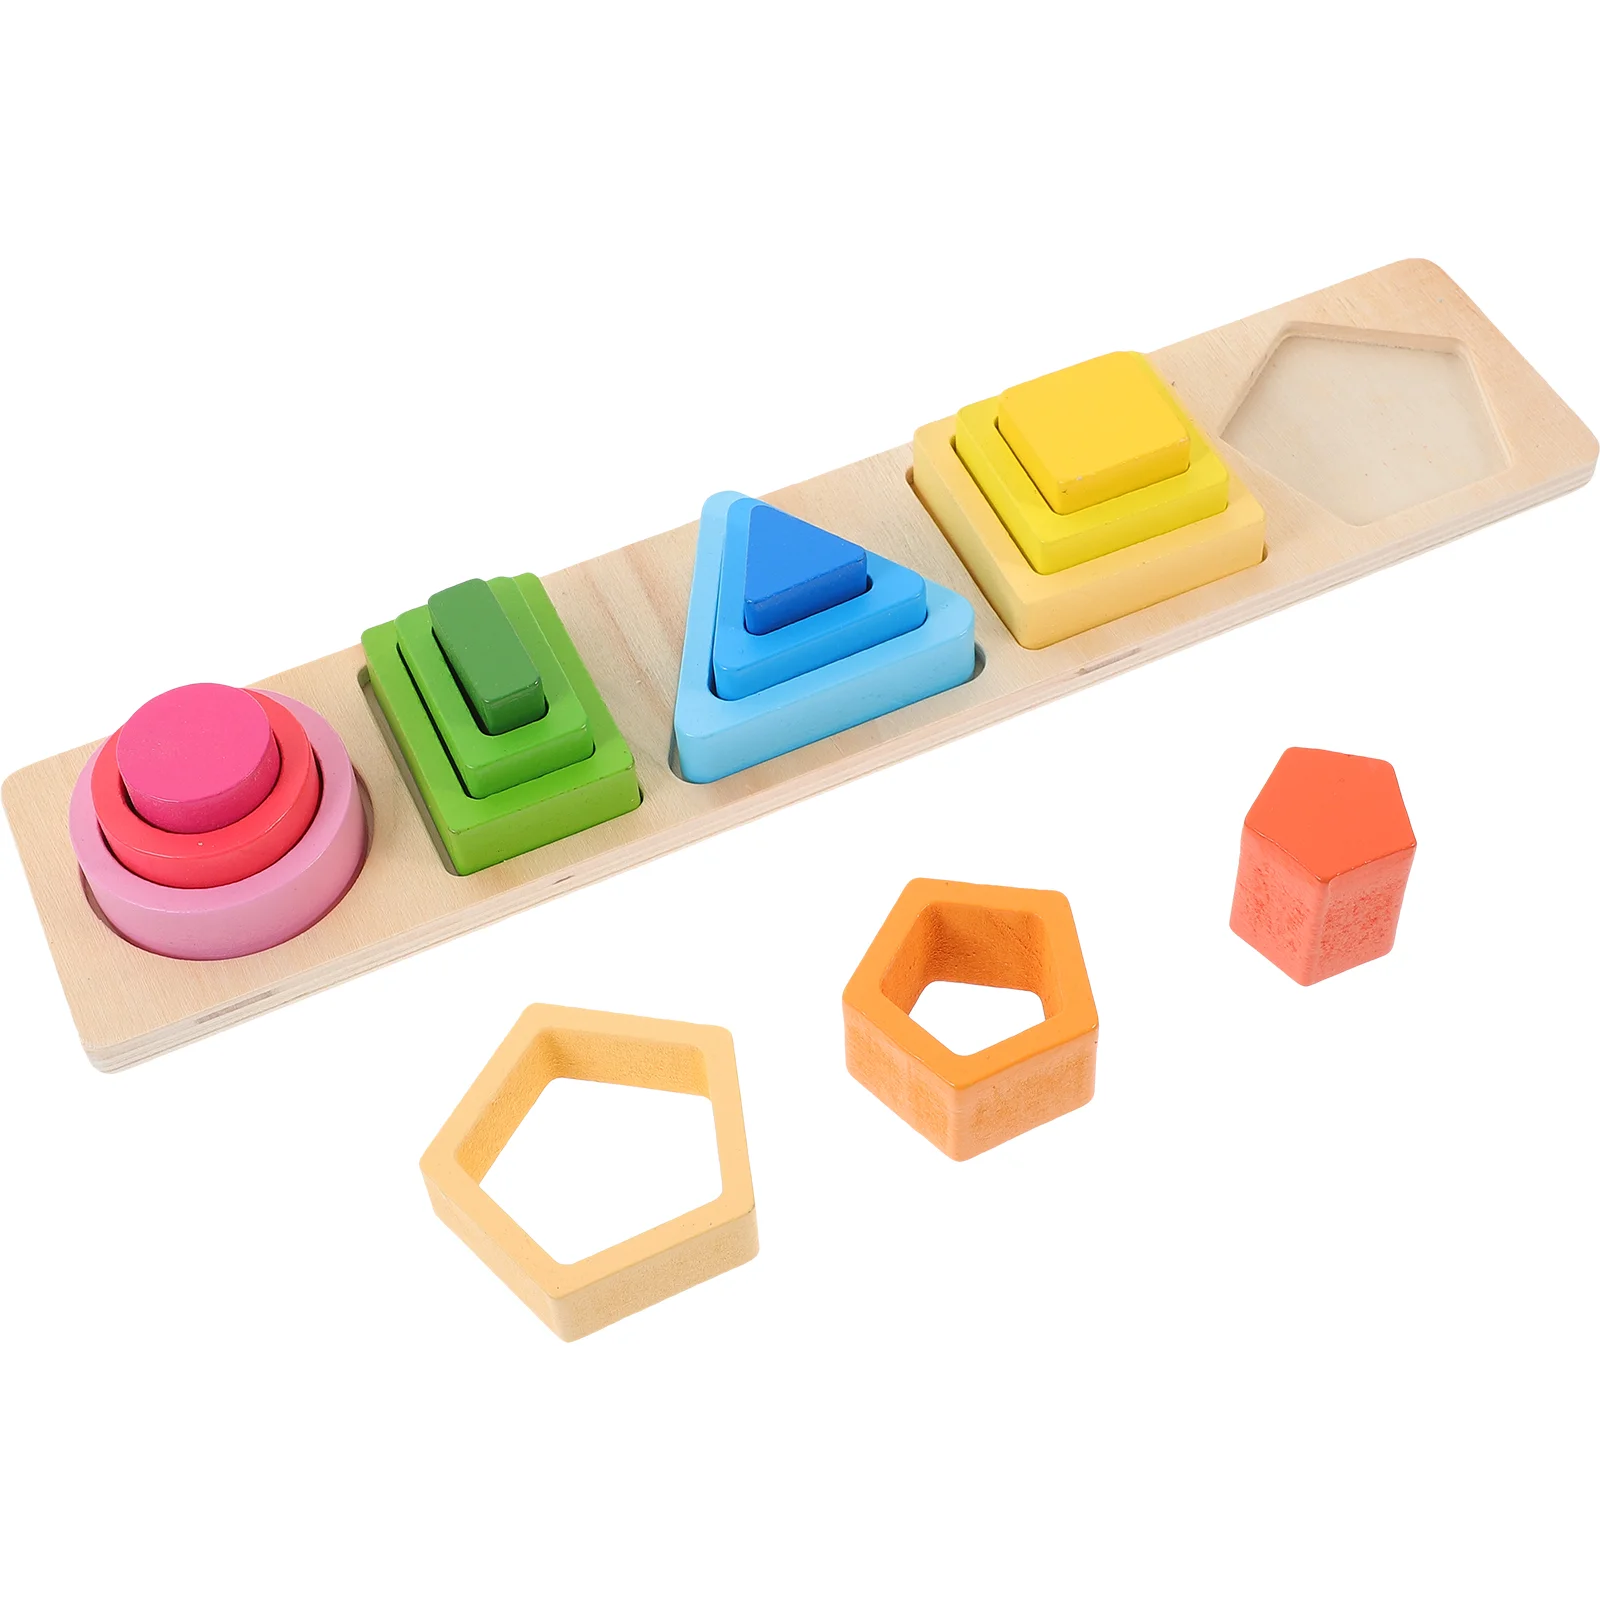 

Toddler Sorting Blocks Toy Set Columns Geometry Shape Wooden Stacking Toys Kids